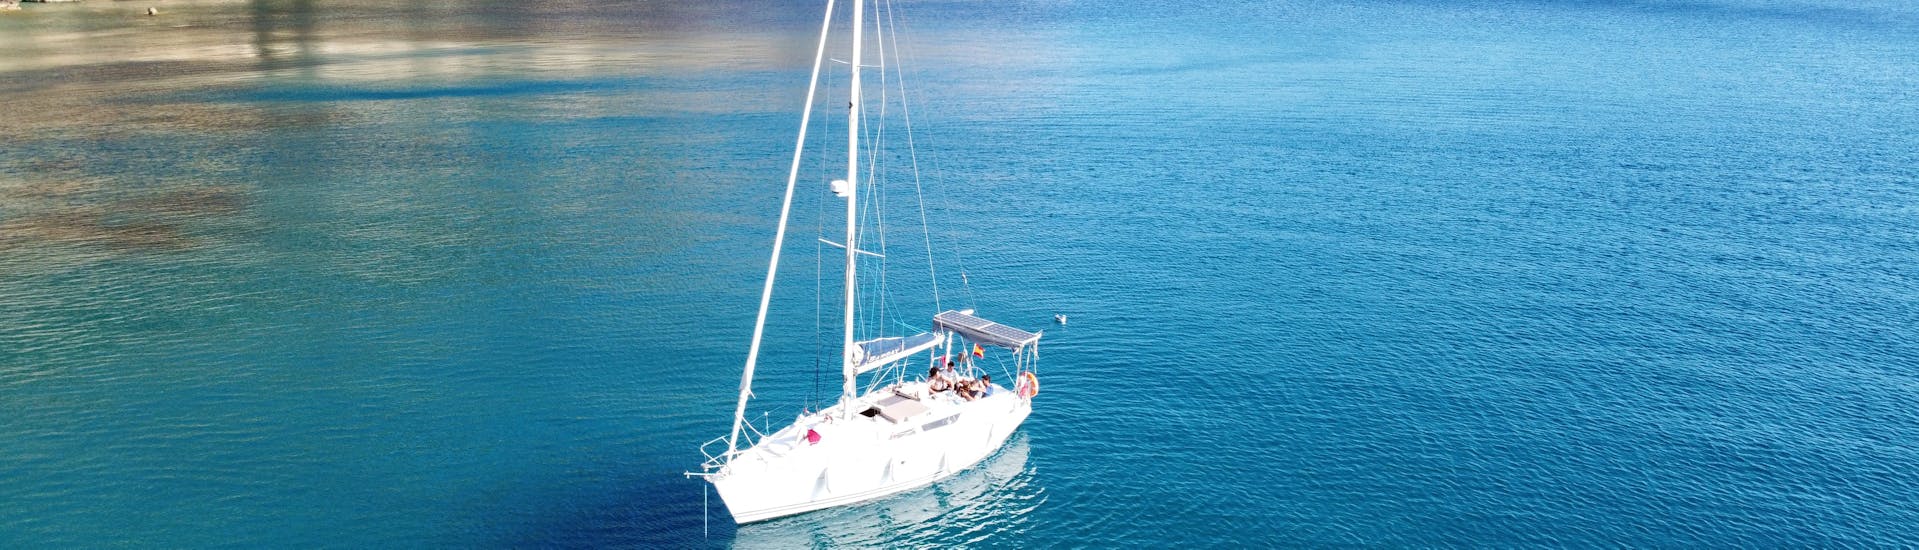 Una travesía en velero por el mar mediterráneo en la costa sur de Mallorca en un tour en barco de Vayu Charters.